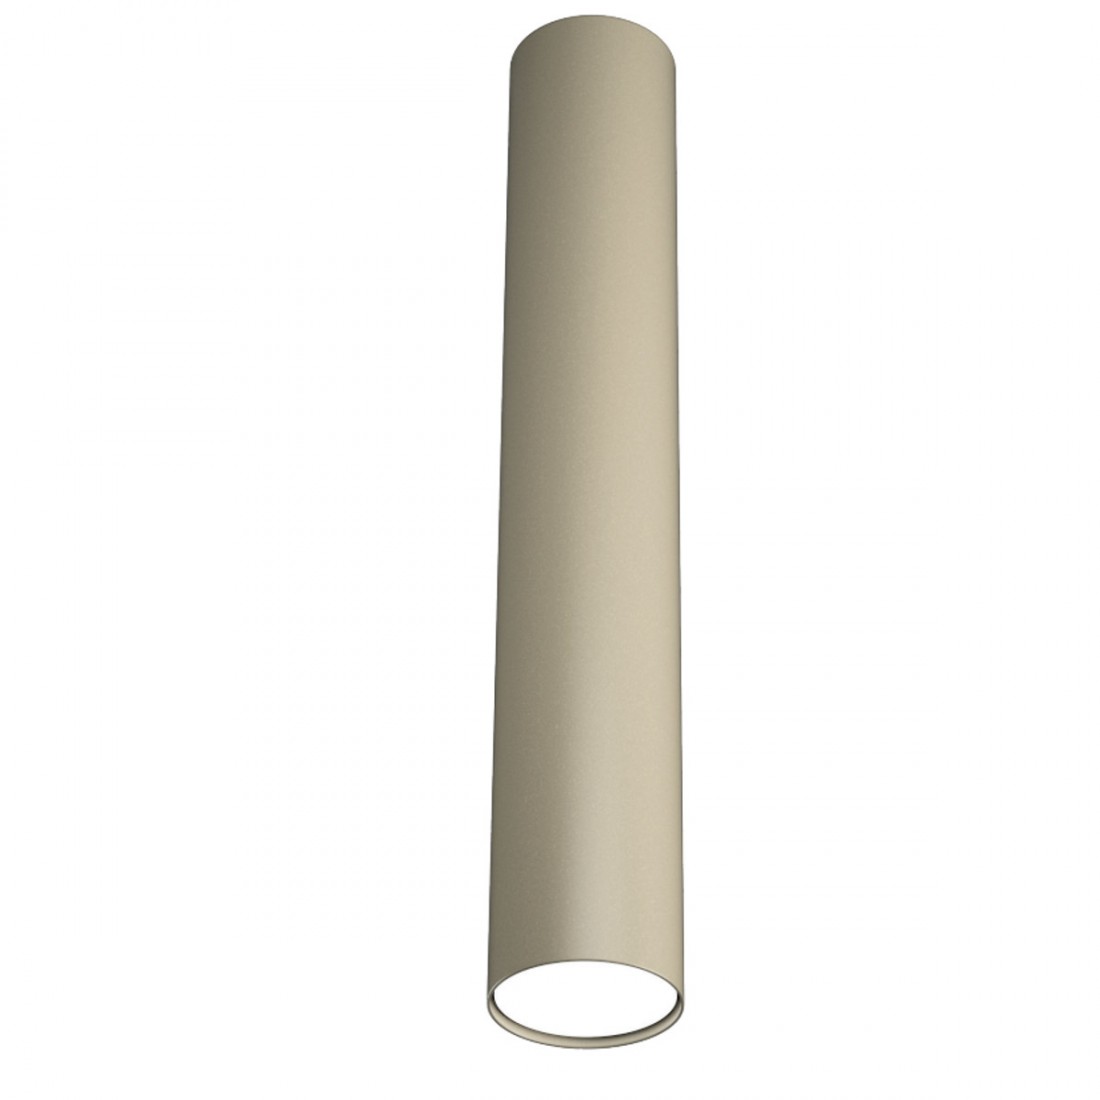 Runde Deckenleuchte, Zylinder aus weißem, sandfarbenem oder grauem Metall. LED.